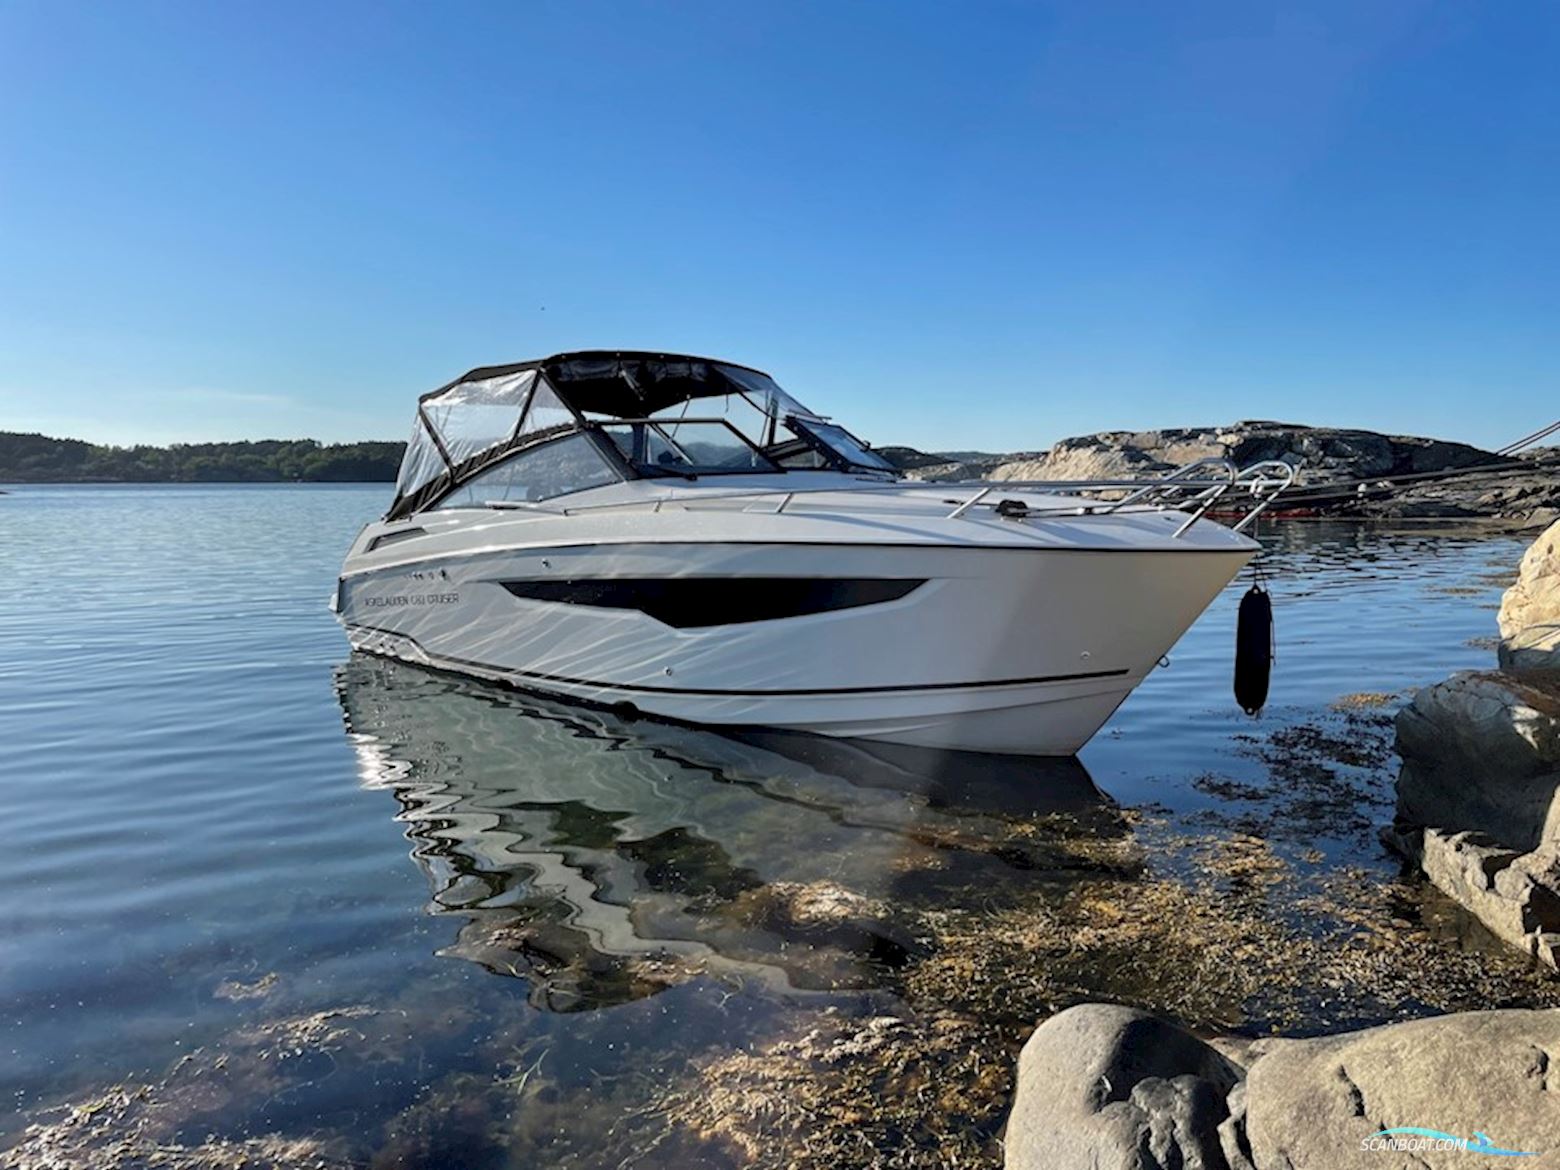 Askeladden C83 Cruiser Tsi Motorbåt 2018, med Suzuki 350 Atxx motor, Sverige